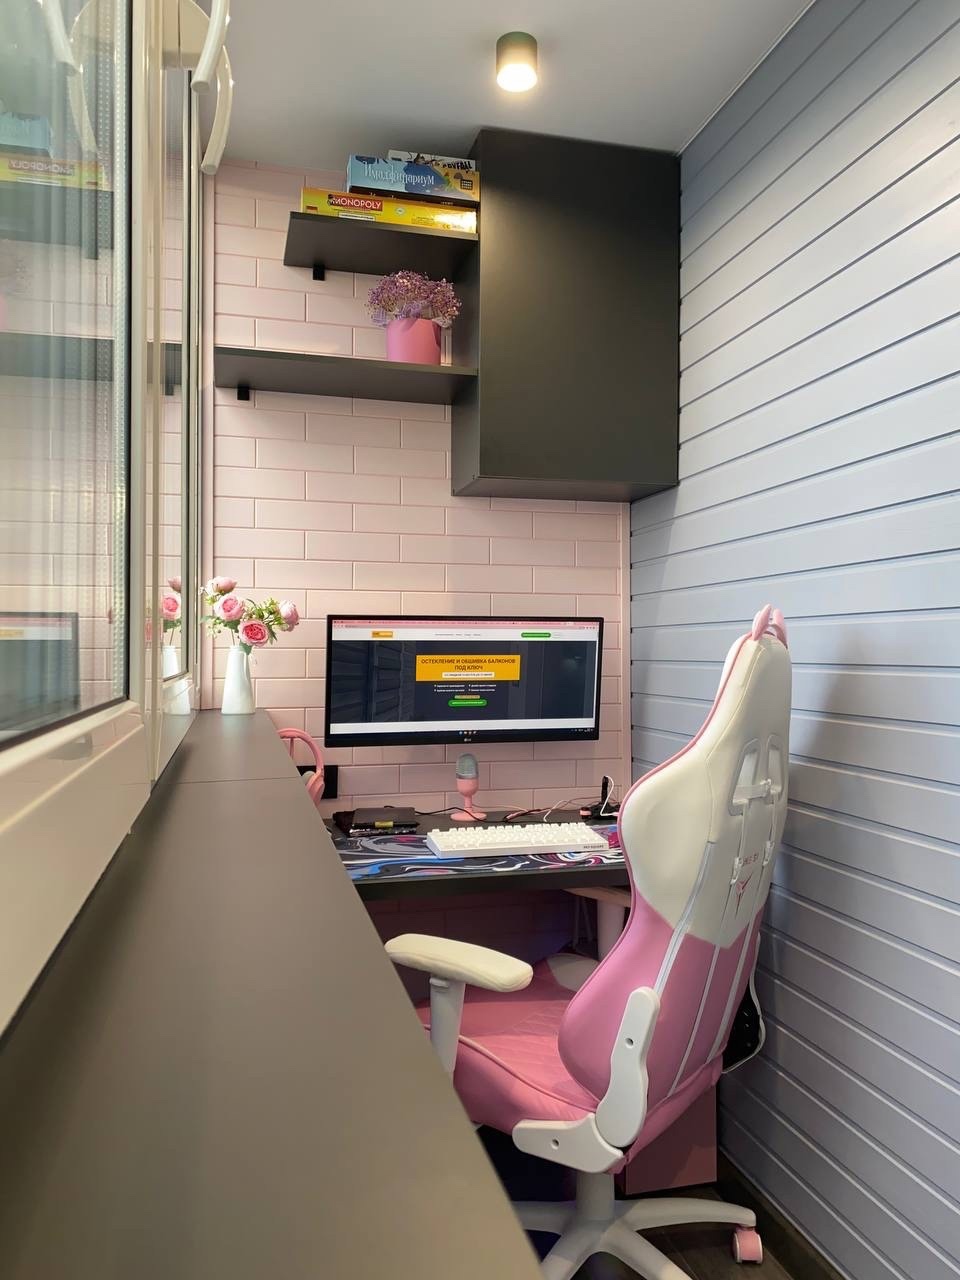 Дизайн узкой лоджии в кирпичном доме под рабочий кабинет и игровую зону для девочки. Сделано компанией КАКСВОИМ